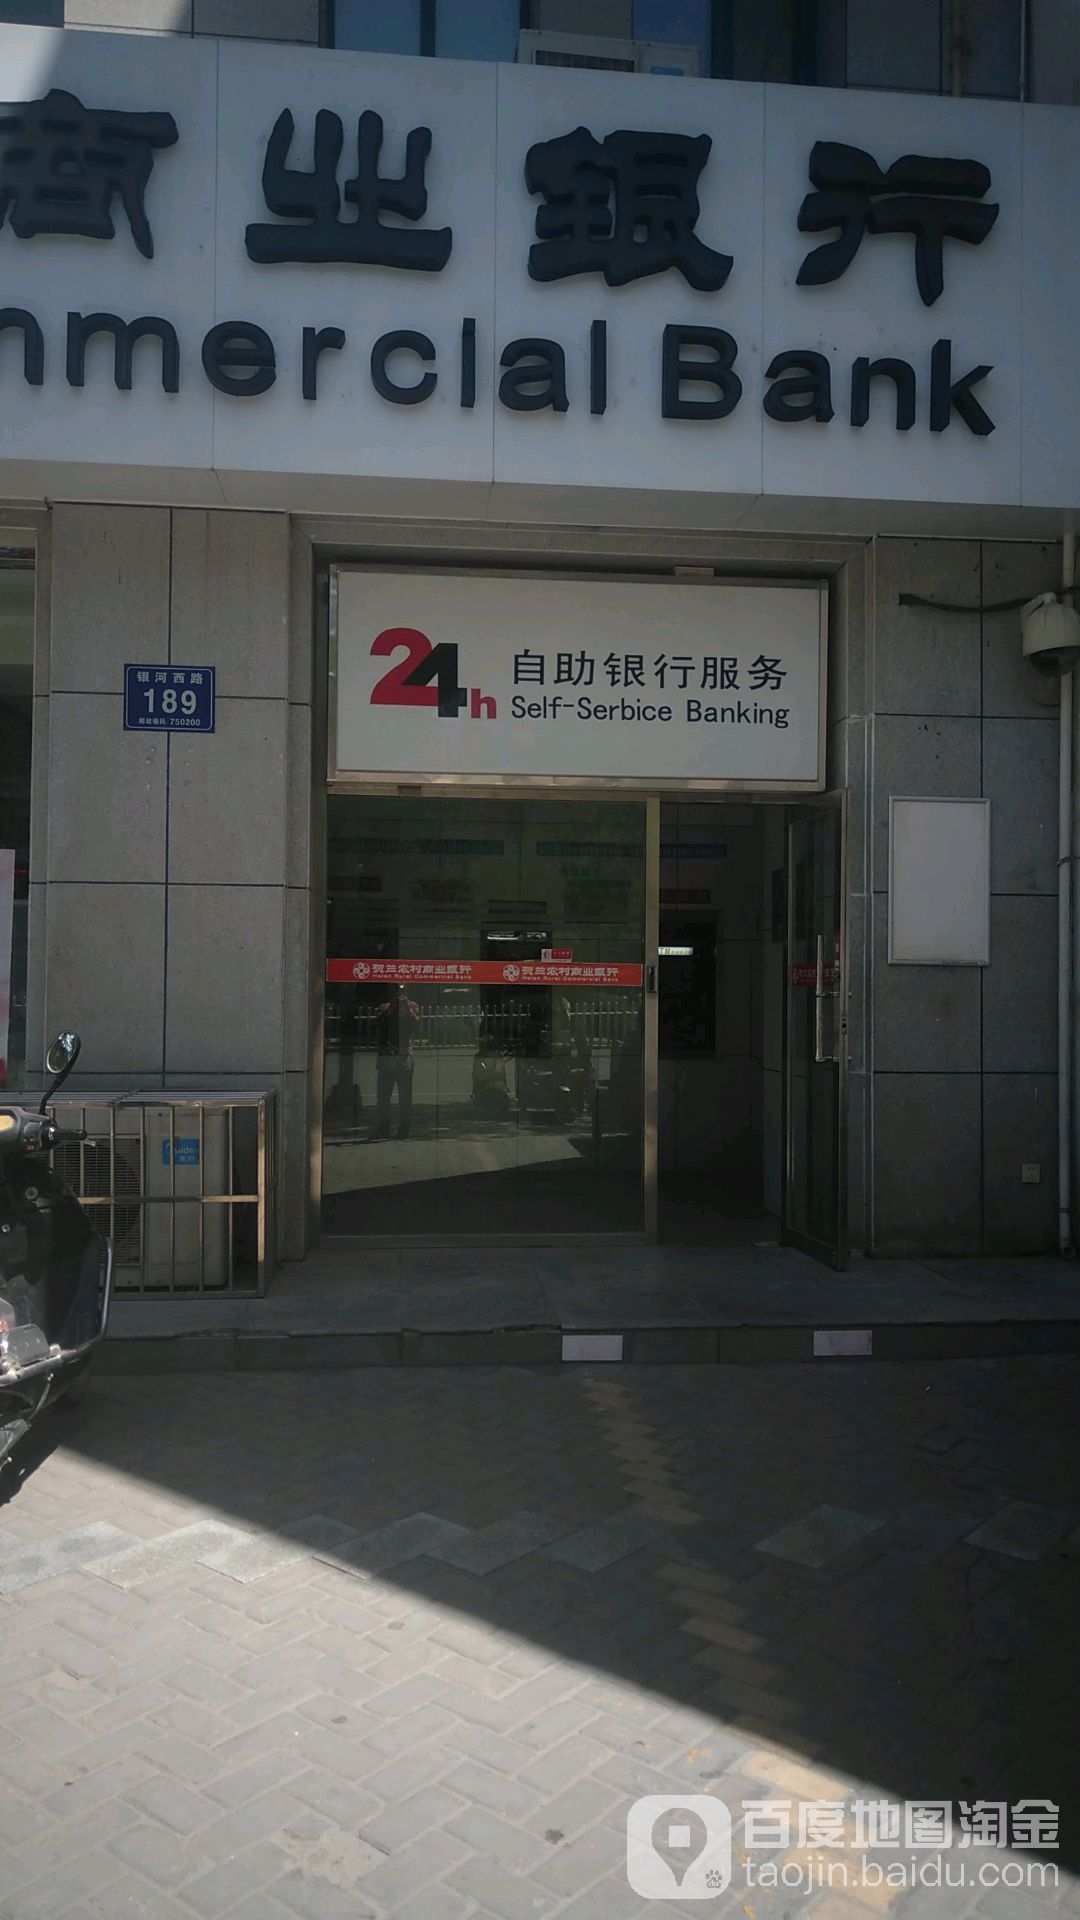 贺兰农村商业银行24小时自助银行服务(习岗支行)